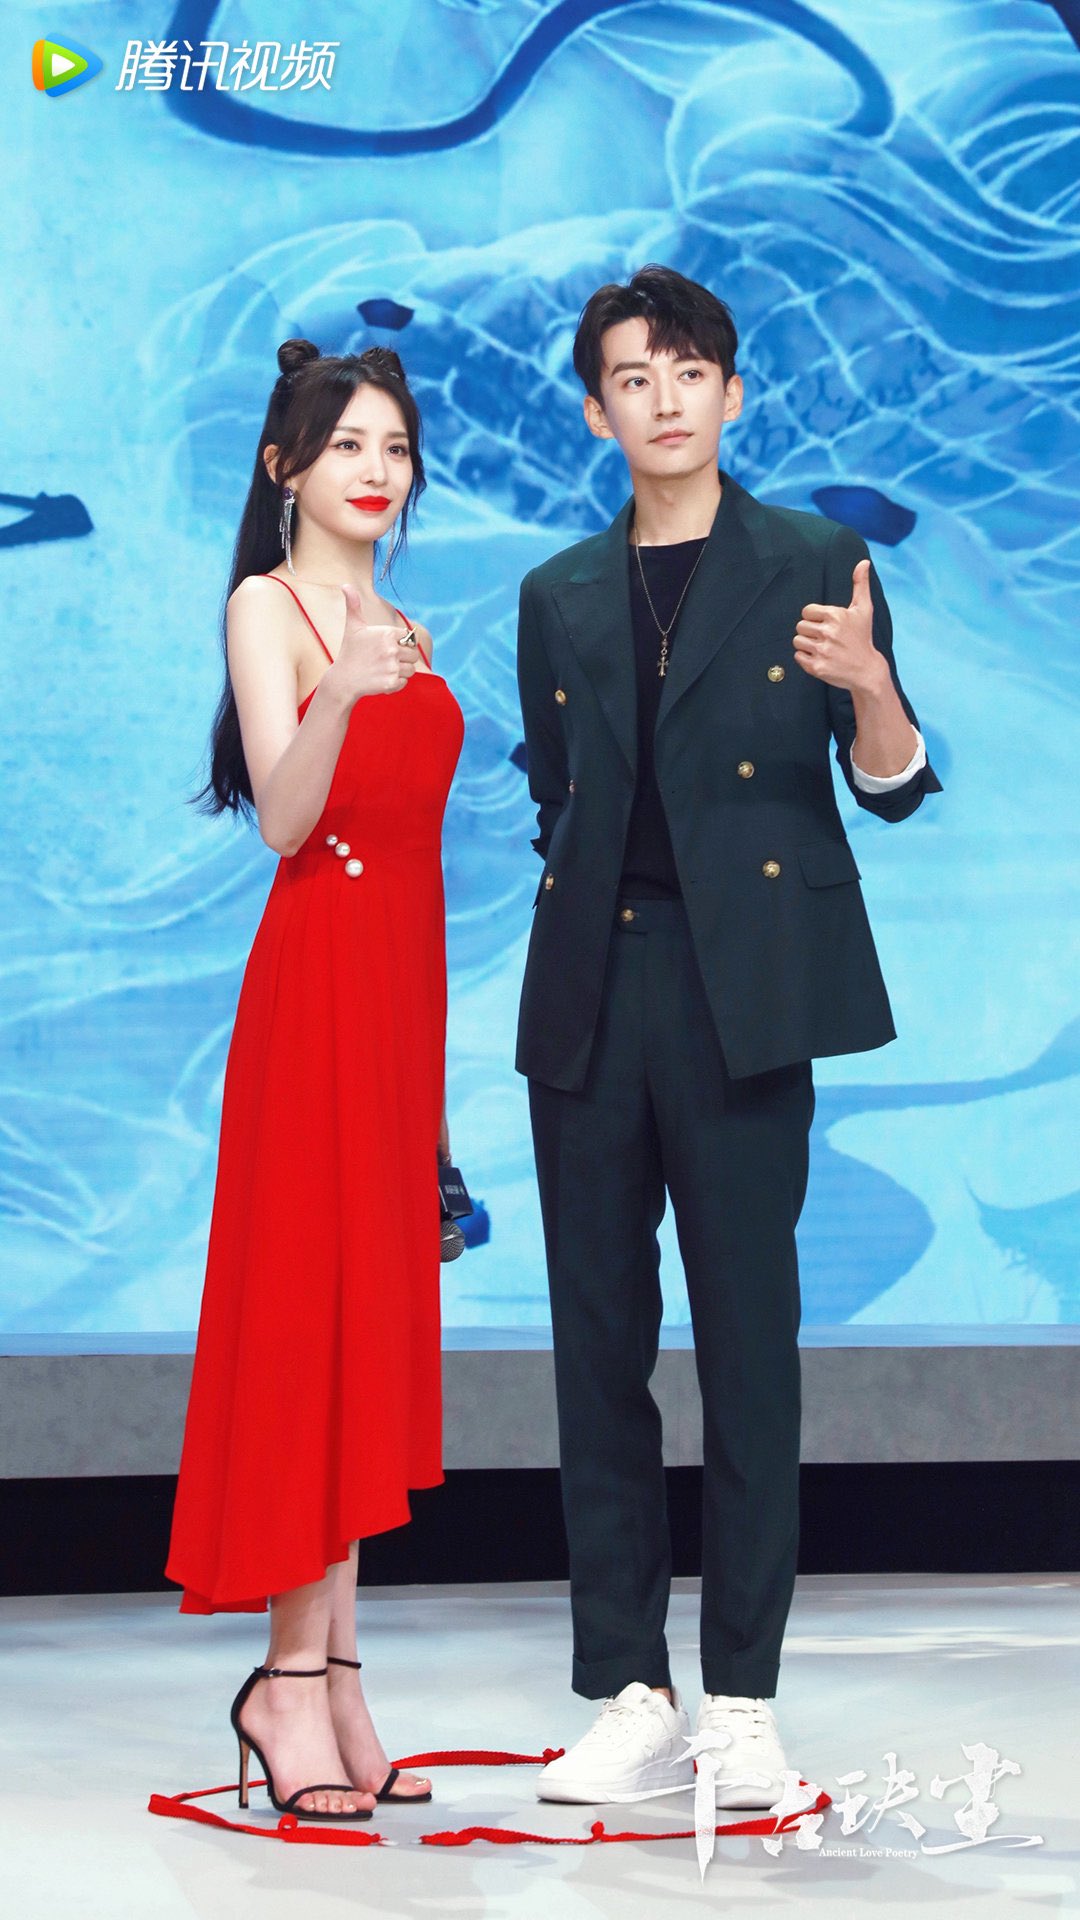 38jiejie on X: Zhou Dongyu and Xu Kai's “Ancient Love Poetry” started  filming today. Peep Xu Kai's comfy outfit. 😆 Zhou Dongyu isn't in the  pic..Zhang Jiani seems to be the second